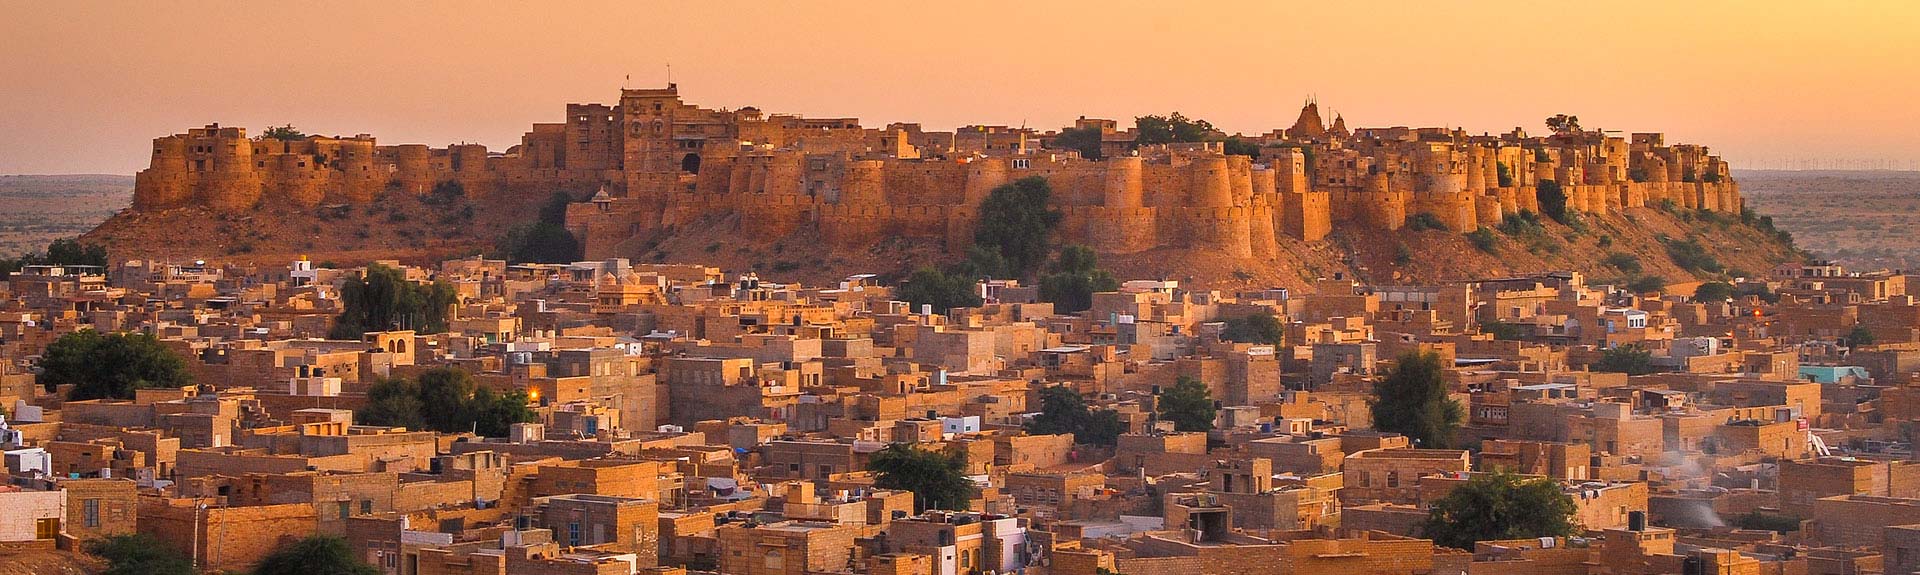 Jaisalmer #14